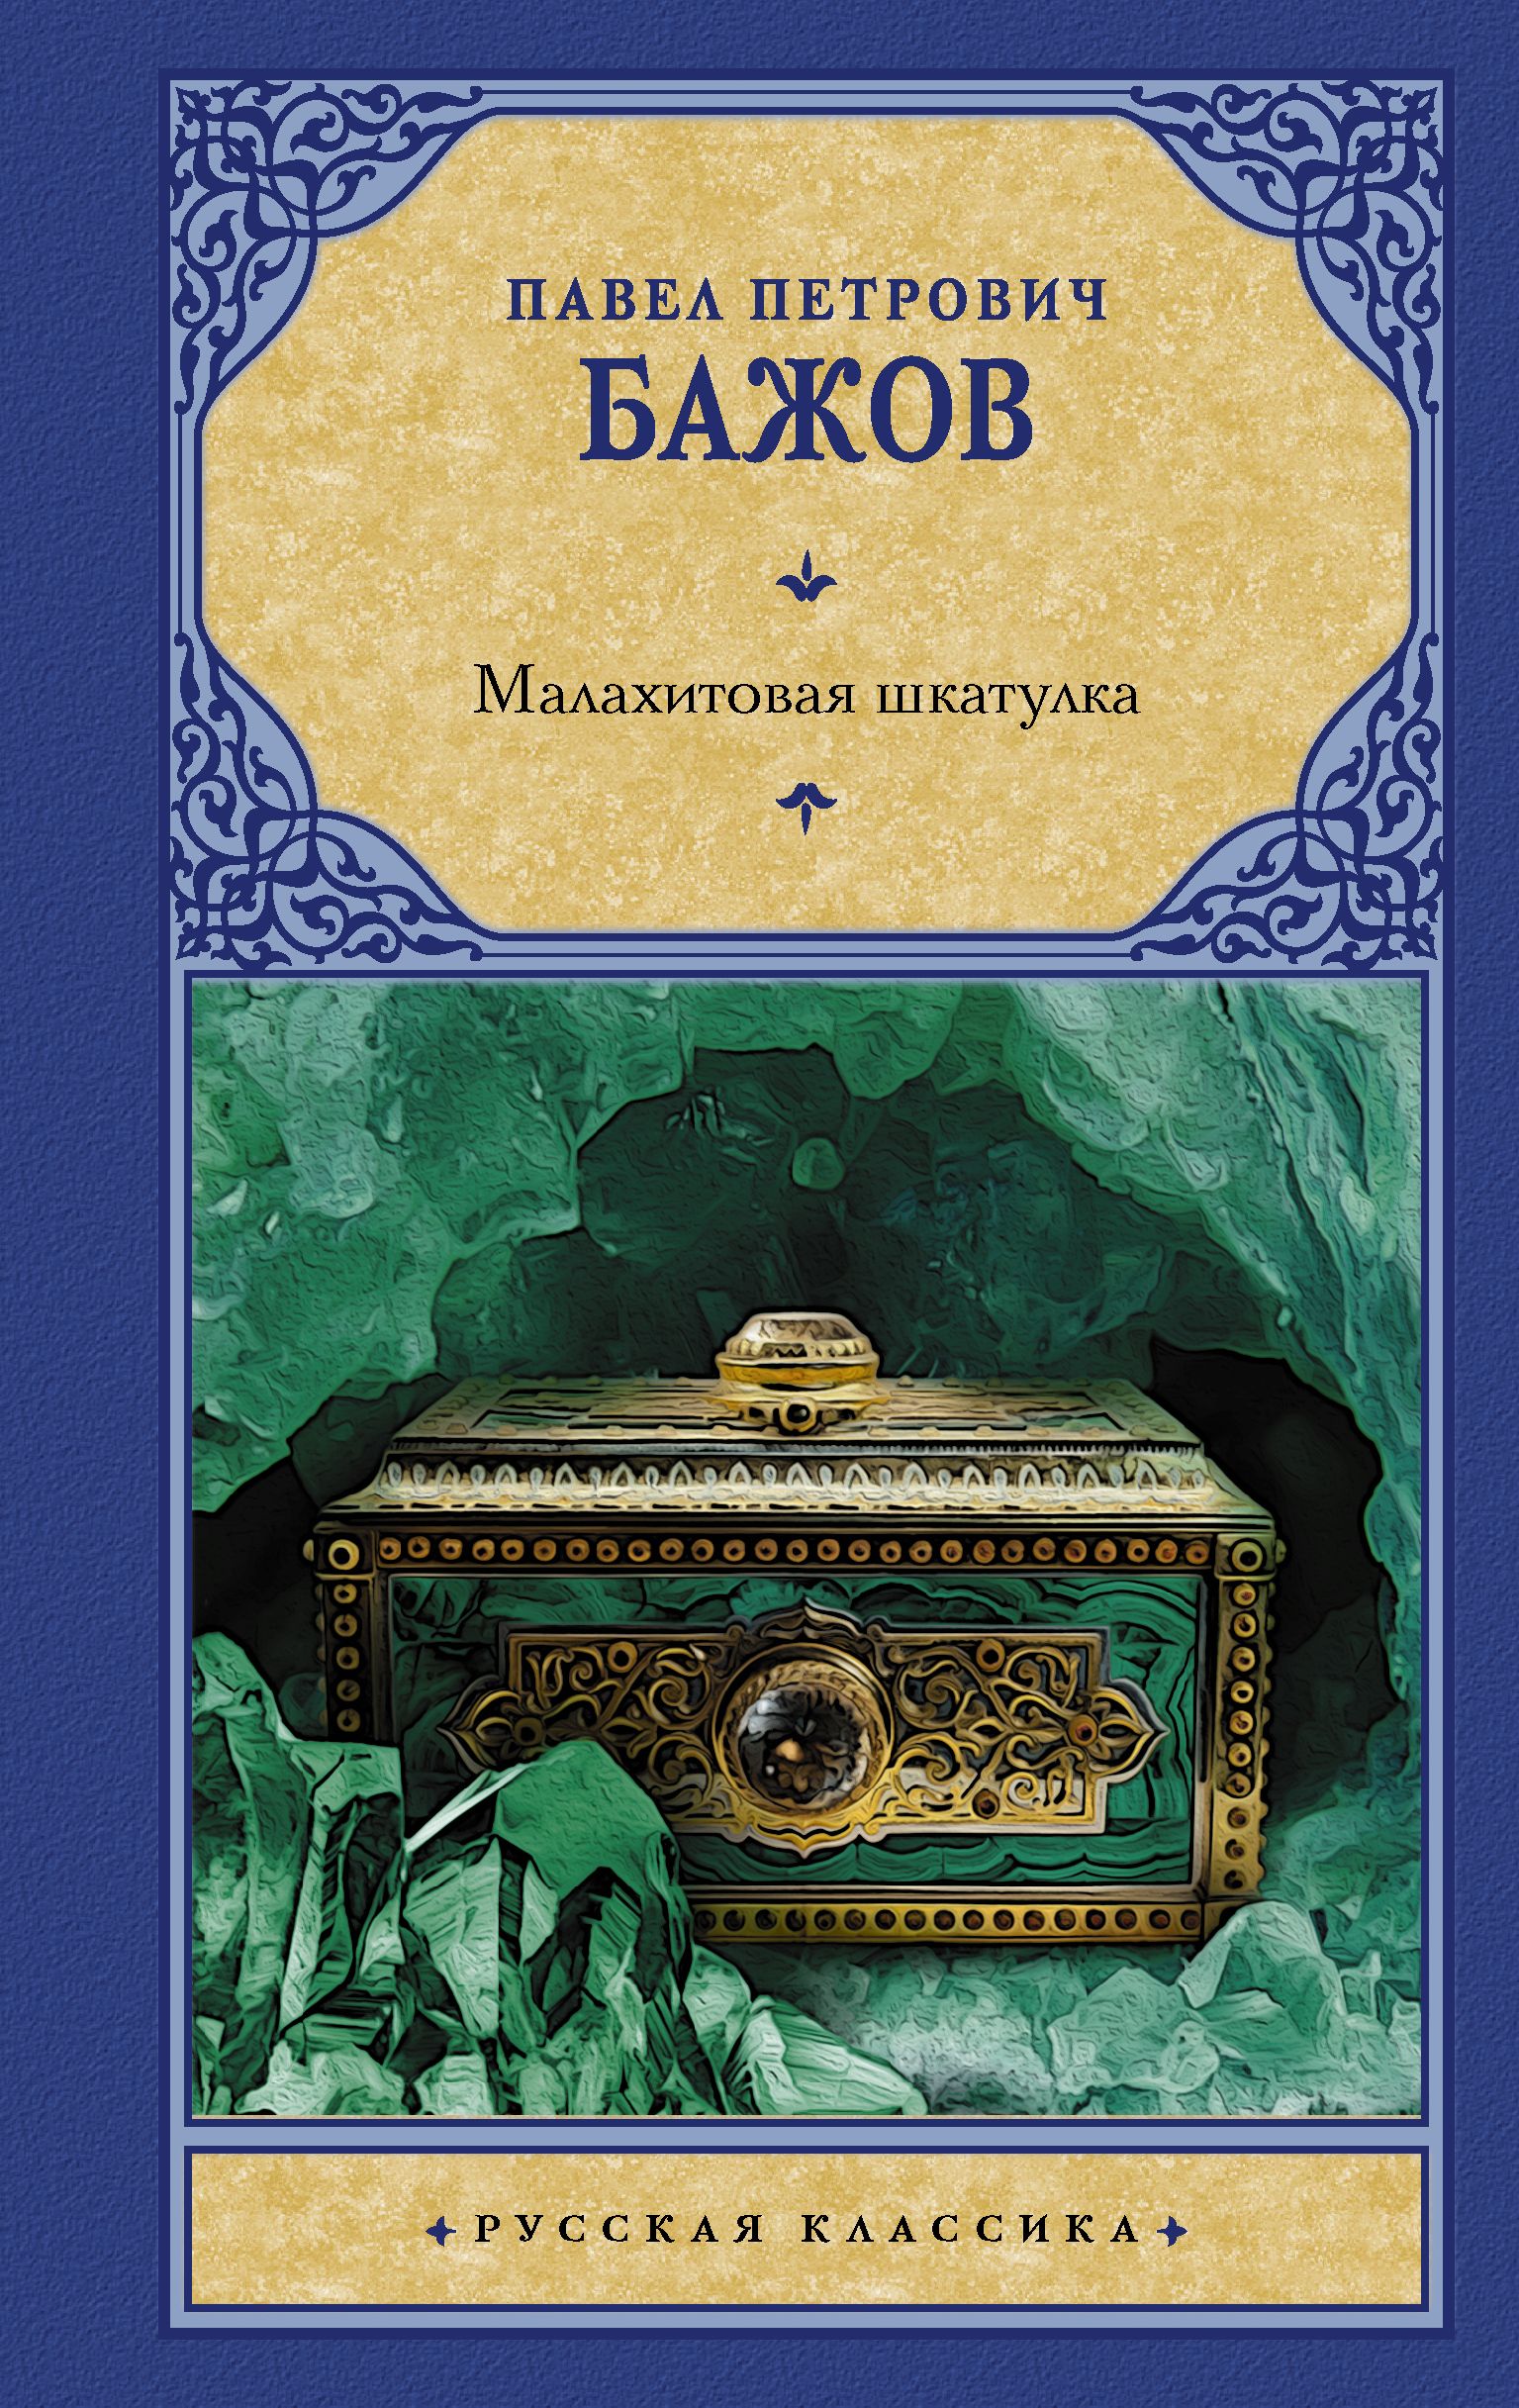 Книга Малахитовая шкатулка Бажов Павел Петрович